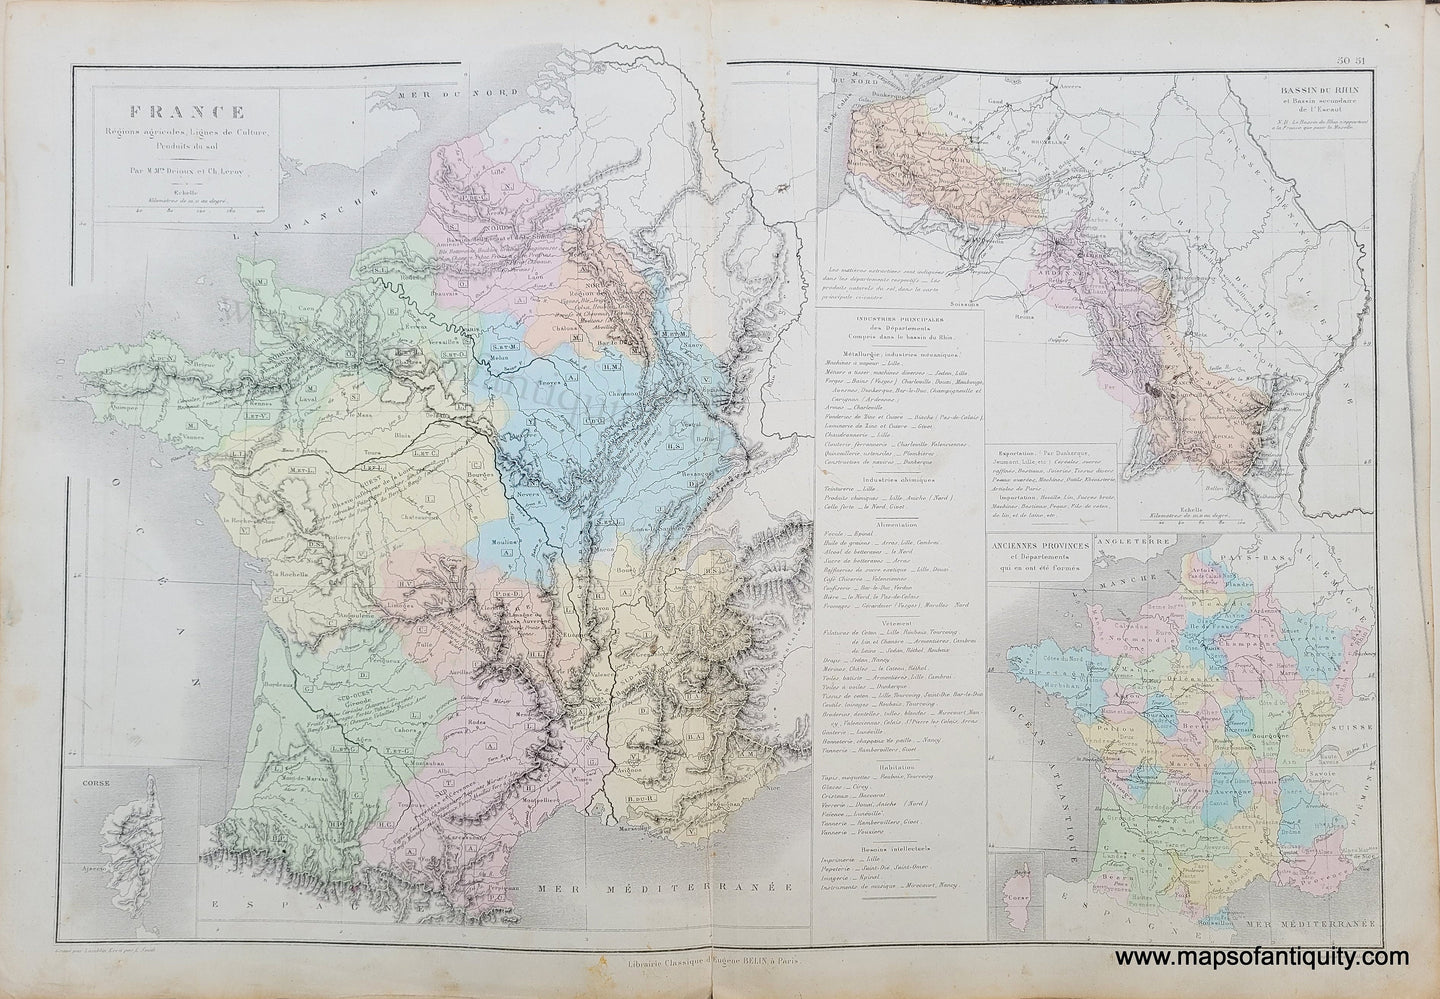 Genuine-Antique-Map-France,-Regions-agricoles,-Lignes-de-Culture,-Produits-du-sol---France,-Agricultural-regions,-Crop-lines,-products-of-the-soil-1875-Drioux-&-Leroy-EUR2825-Maps-Of-Antiquity